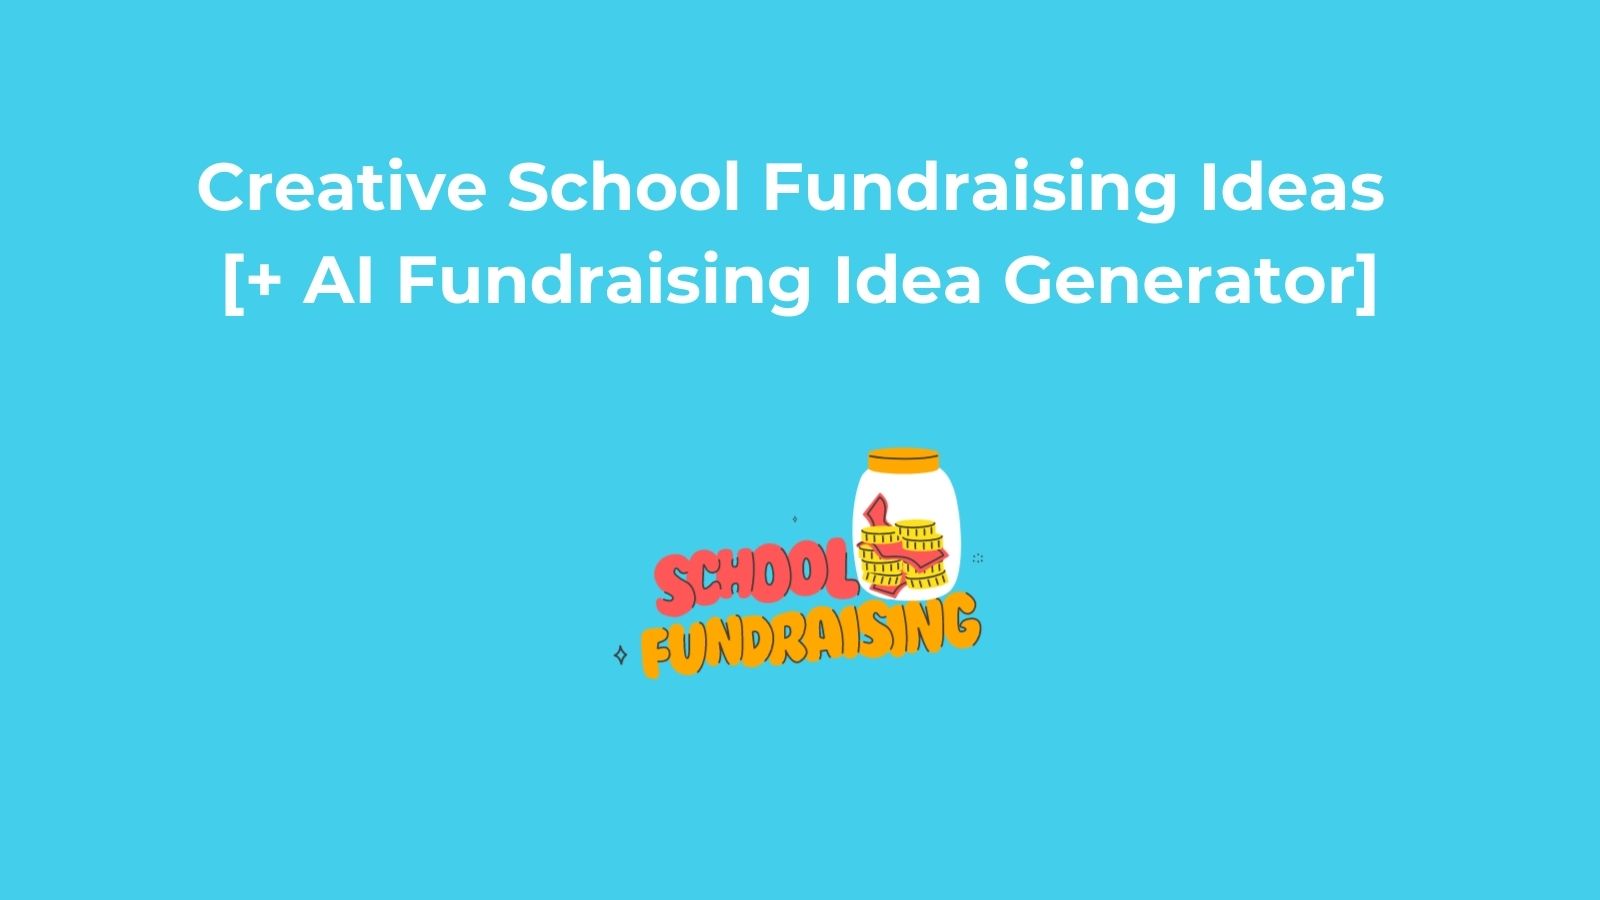 Creative School Fundraising Ideas andAI Fundraising Idea Generator